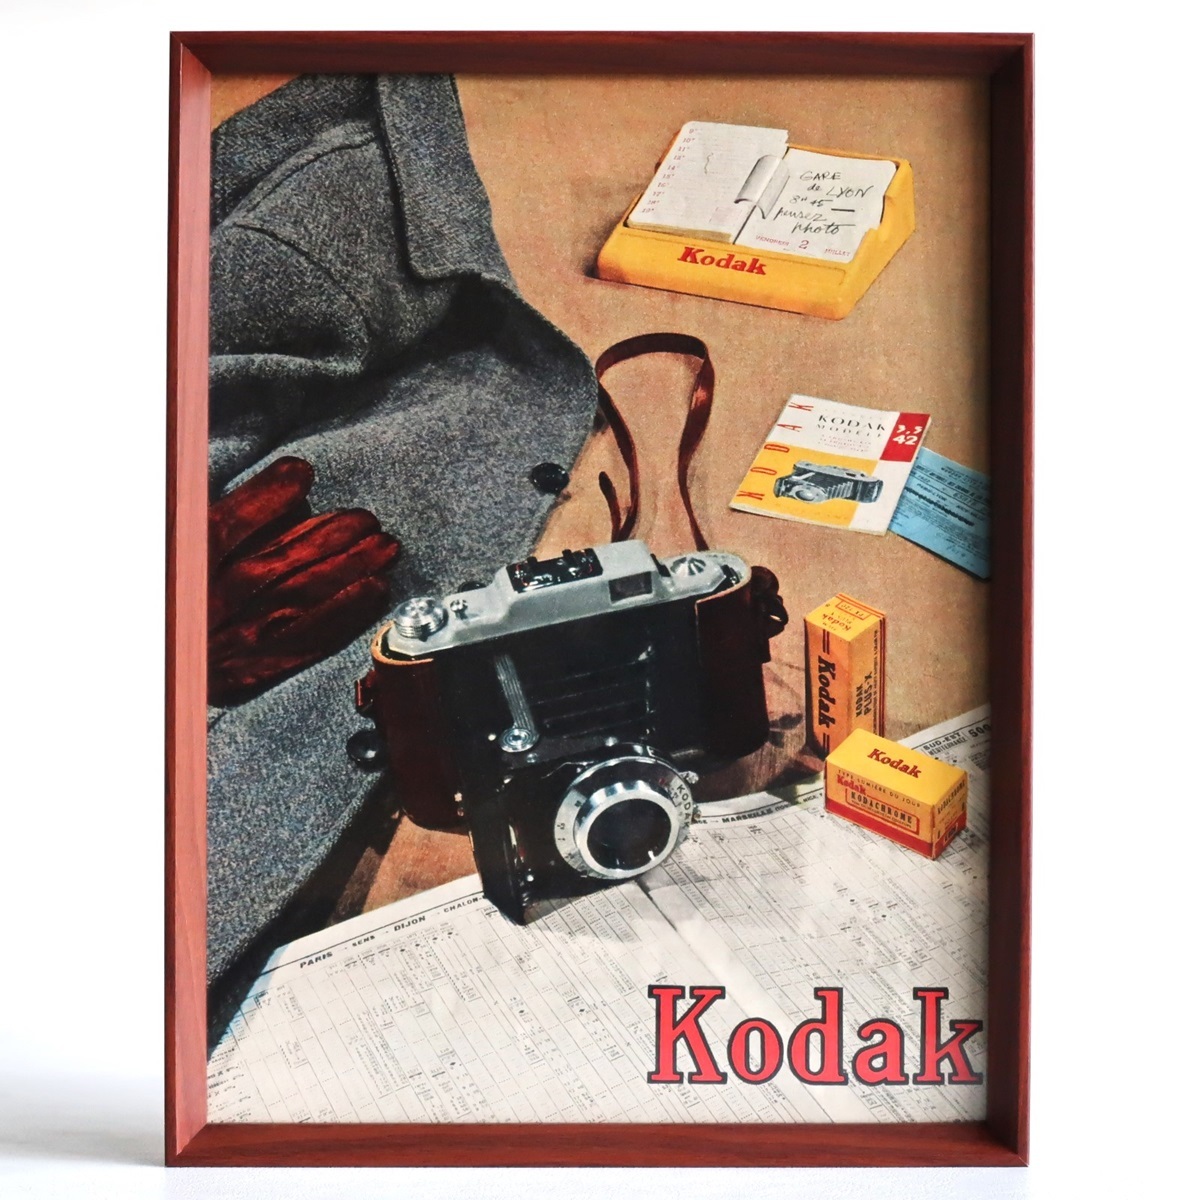 Kodak コダック 1954年 カメラ フィルム イラスト フランス ヴィンテージ 広告 額装品 コレクション インテリア フレンチ ポスター 稀少_画像1